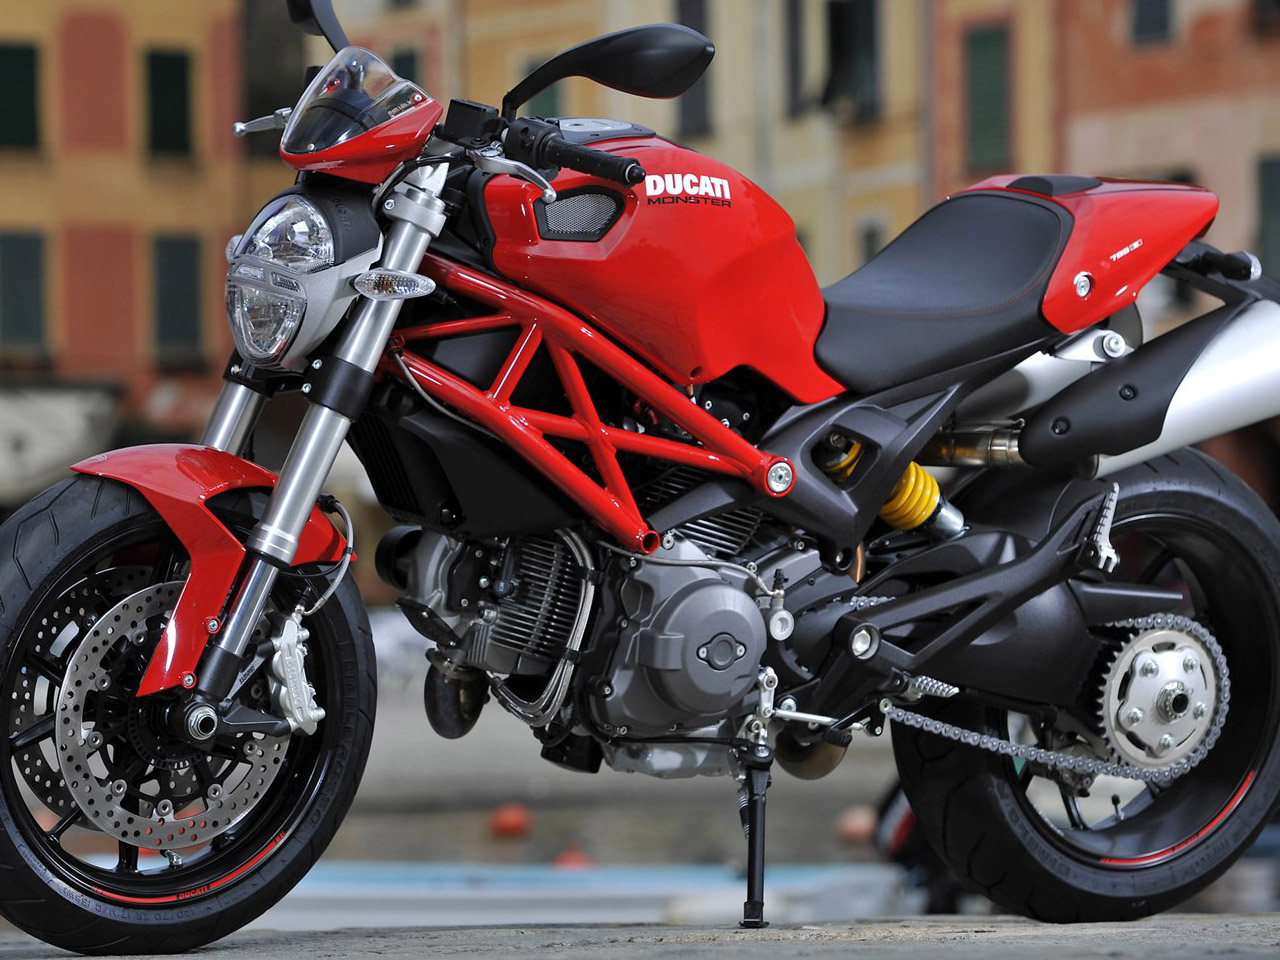 Koleksi 96 Gambar Motor Ducati Monster Terbaik Dan Terupdate